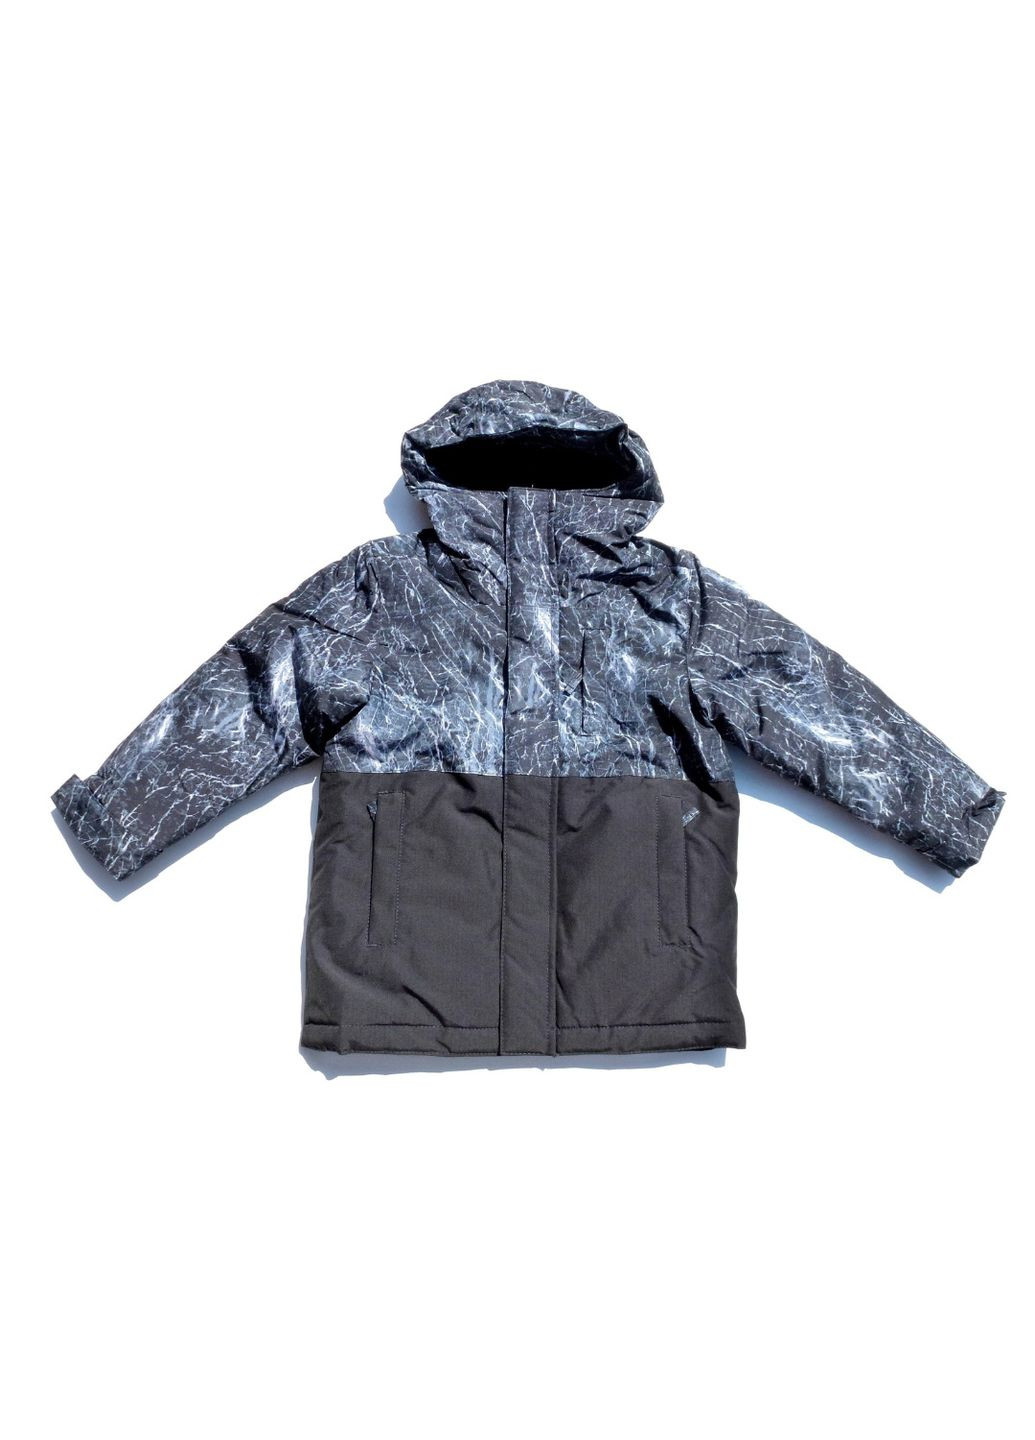 Комбинированная зимняя куртка зимняя детская (деми+флисовая ветровка) 3 в 1, 98-104 см, 3-4 р The Children's Place